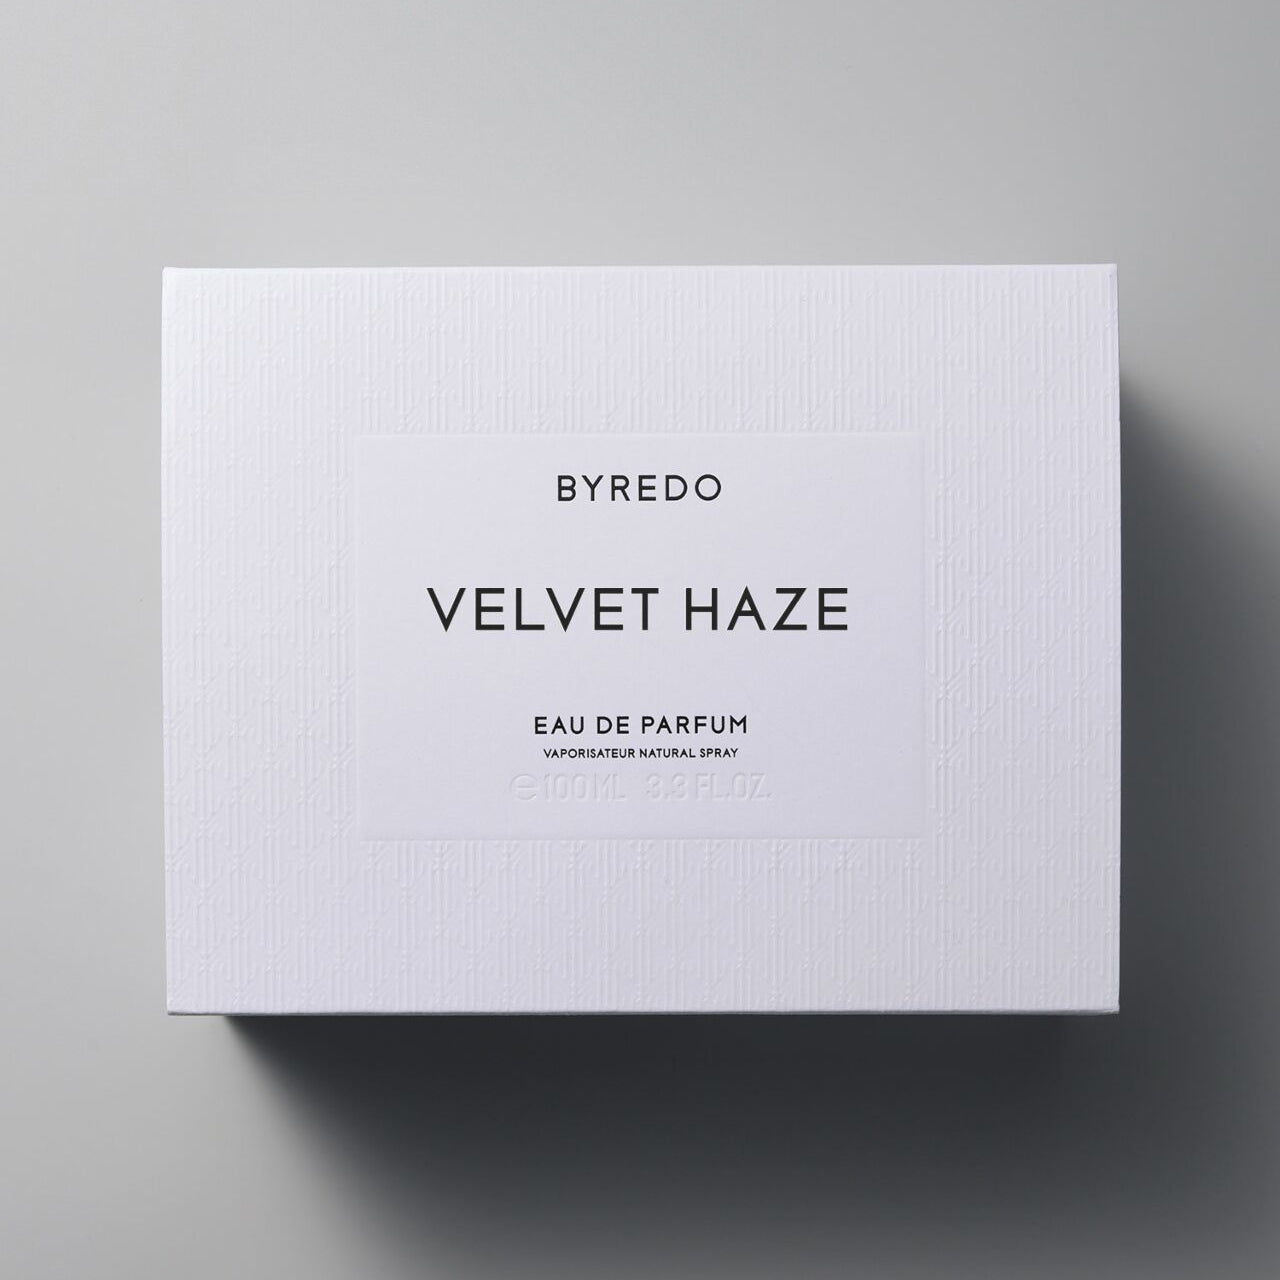 Perfume Byredo Velvet Haze